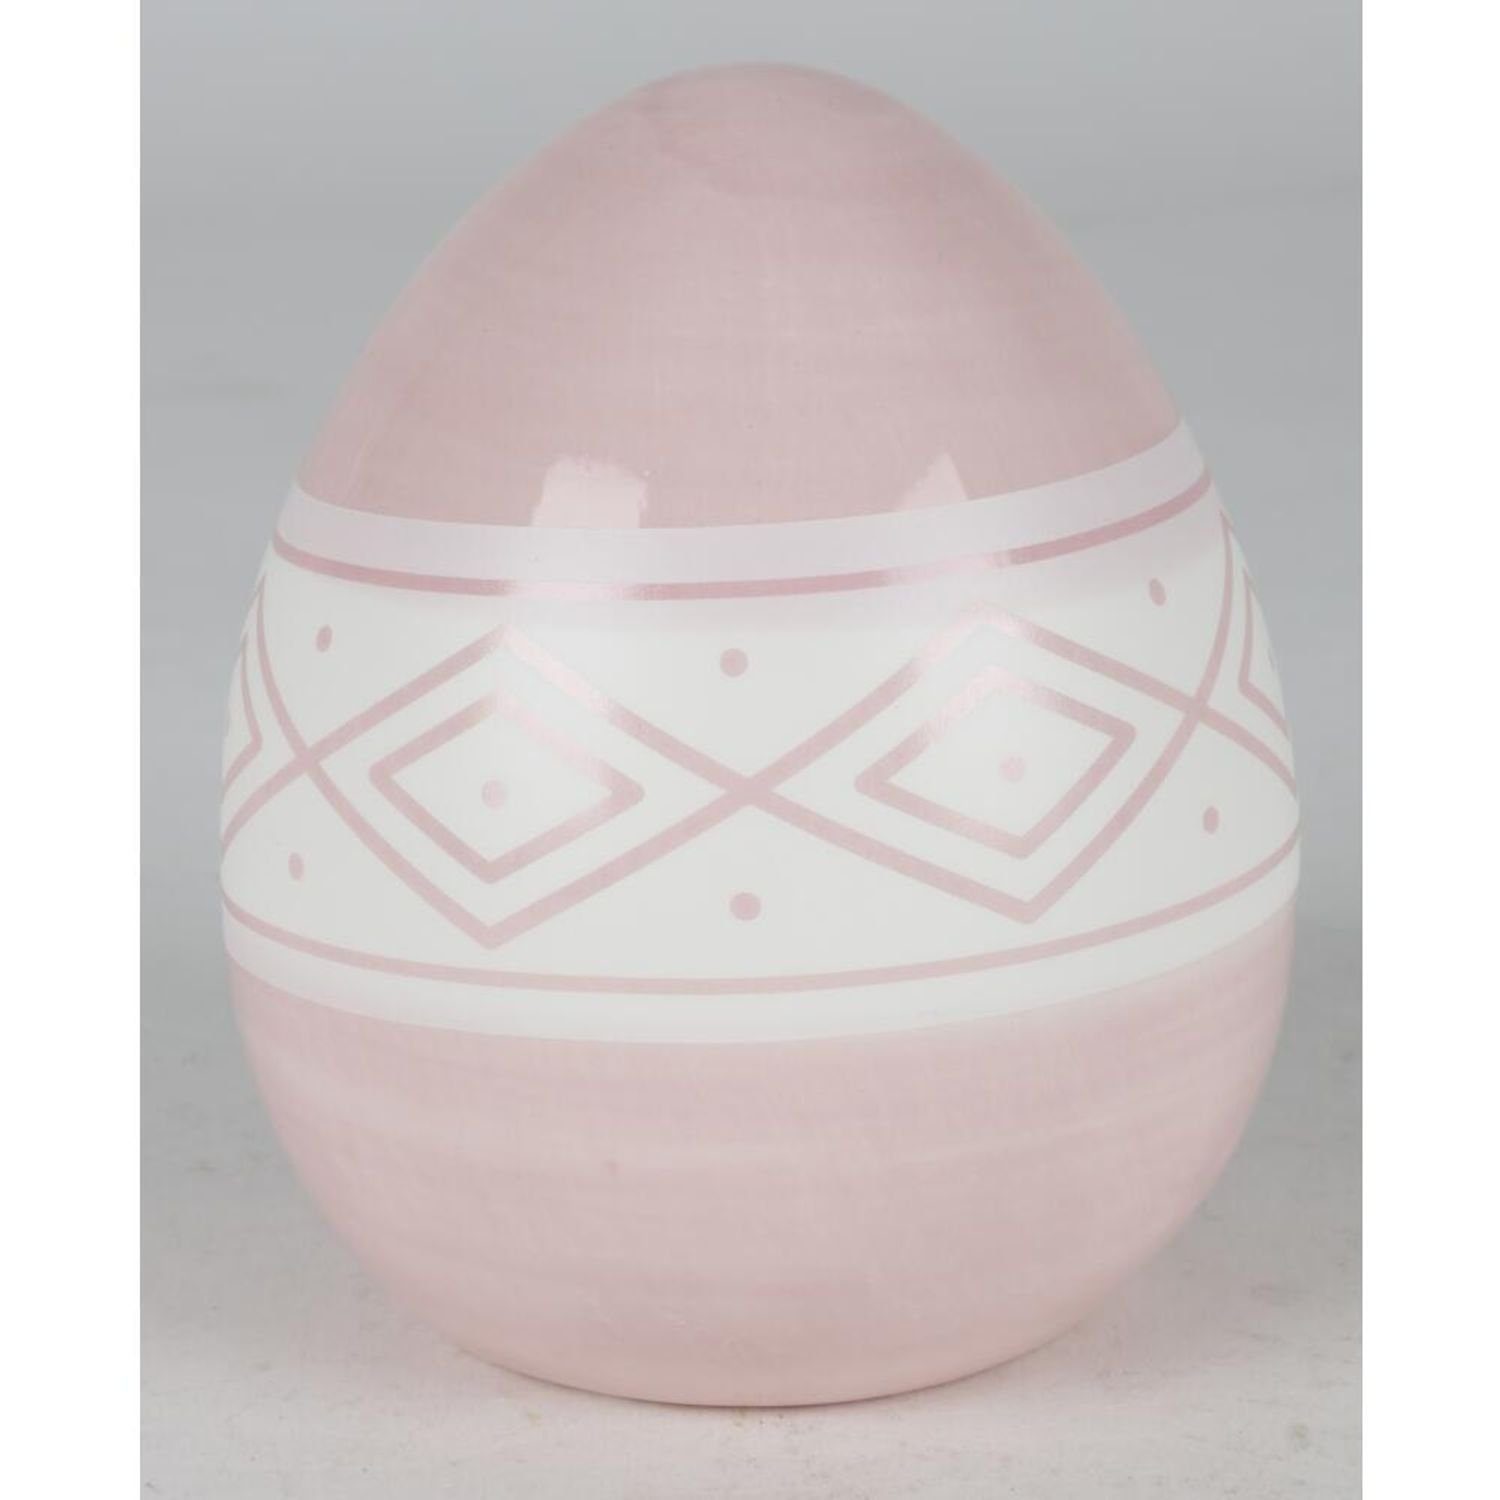 Haushalt Dekofigur BURI wo Dekoration verschiedene Keramik-Ostereier Farben 9x Ostern